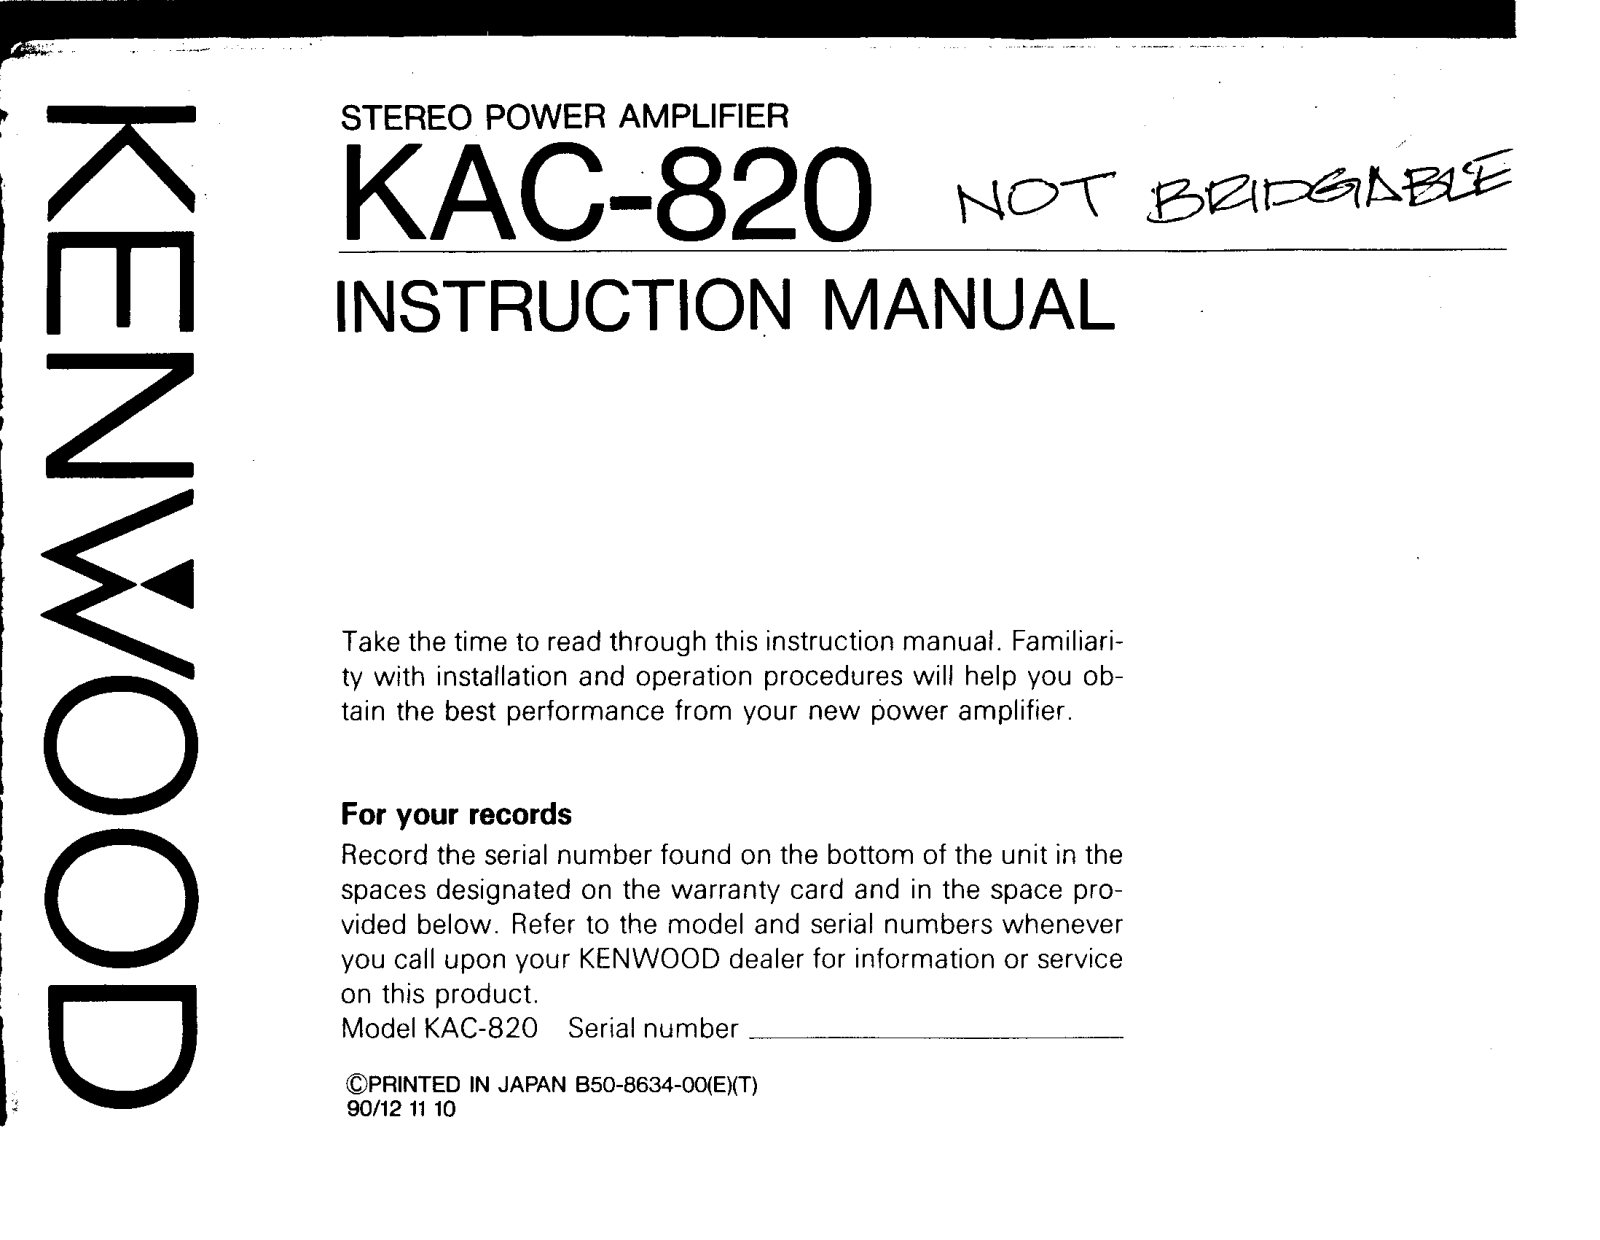 Kenwood KAC-820 Owner's Manual